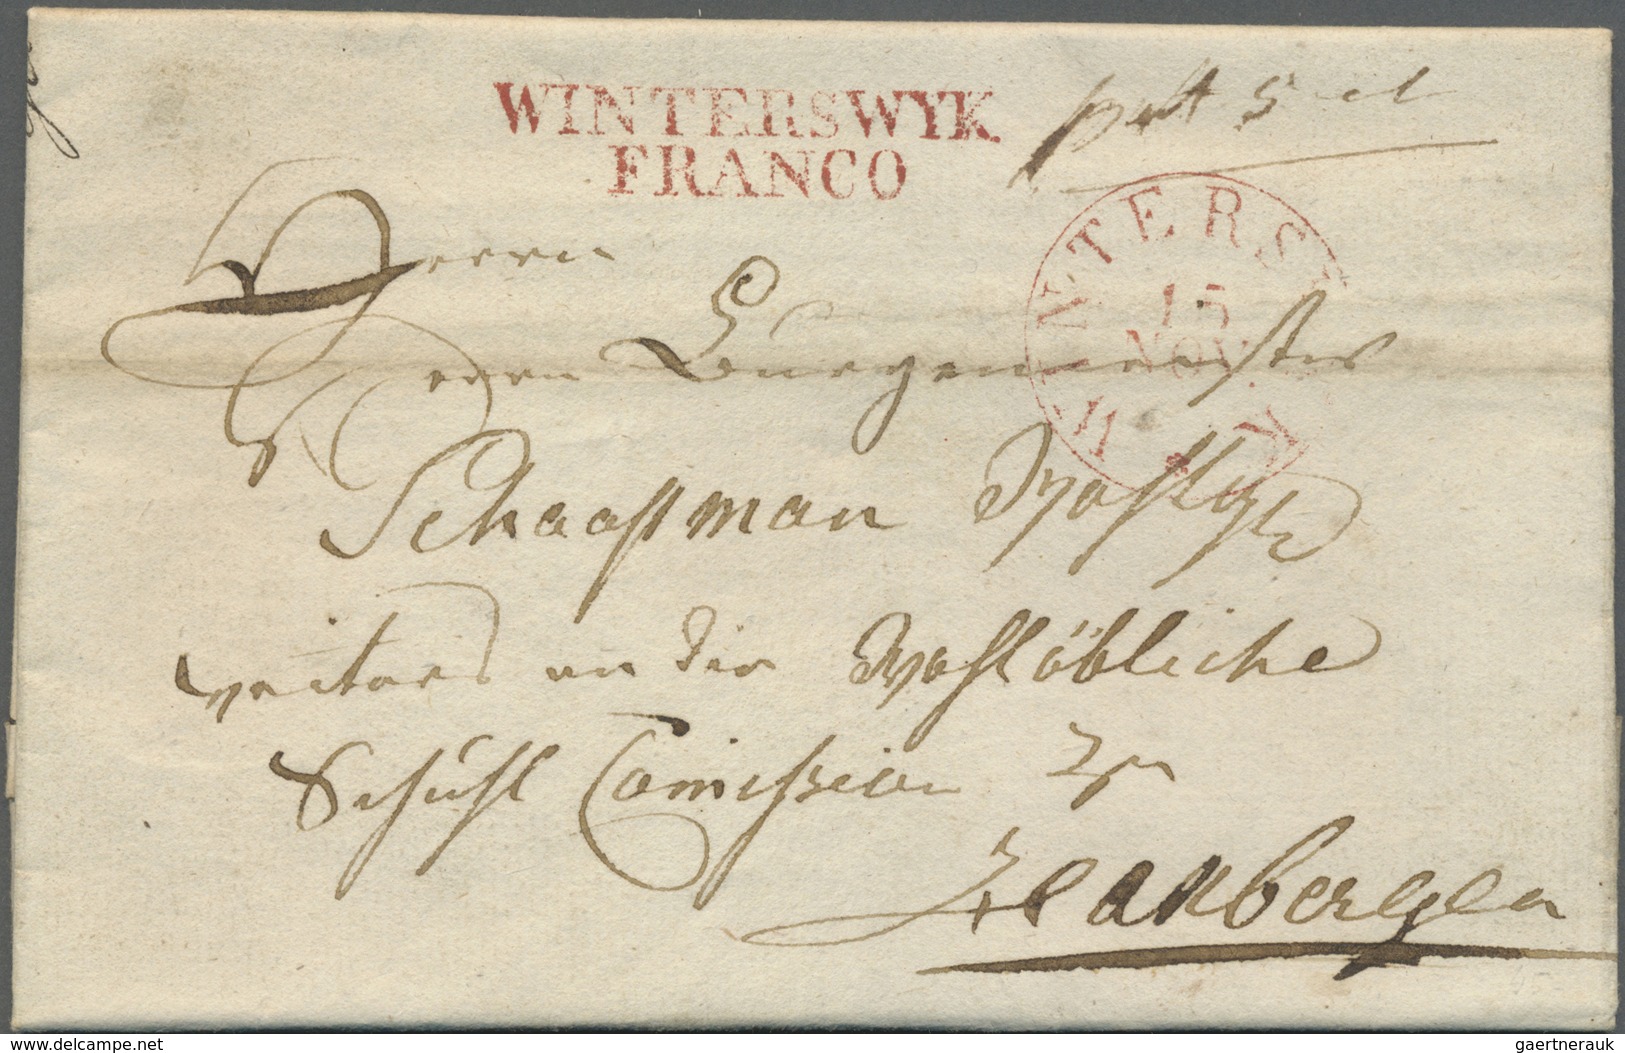 Br Niederlande - Vorphilatelie: 1800/1850 (ca.), Partie von ca. 110 Briefen mit verschiedensten "FRANCO